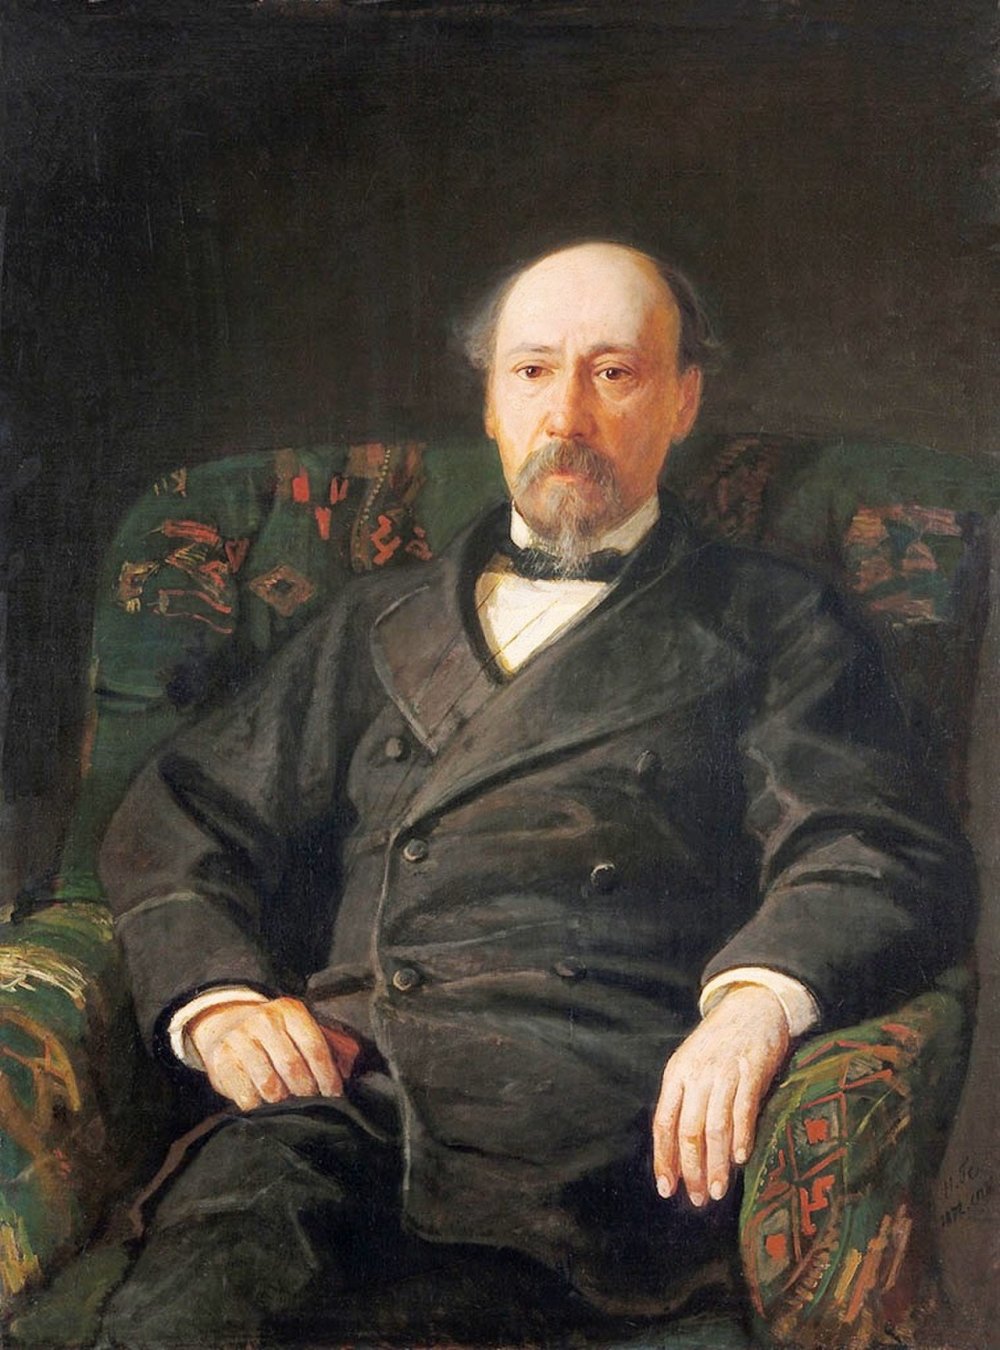 Николай Алексеевич Некрасов (1821-1878)